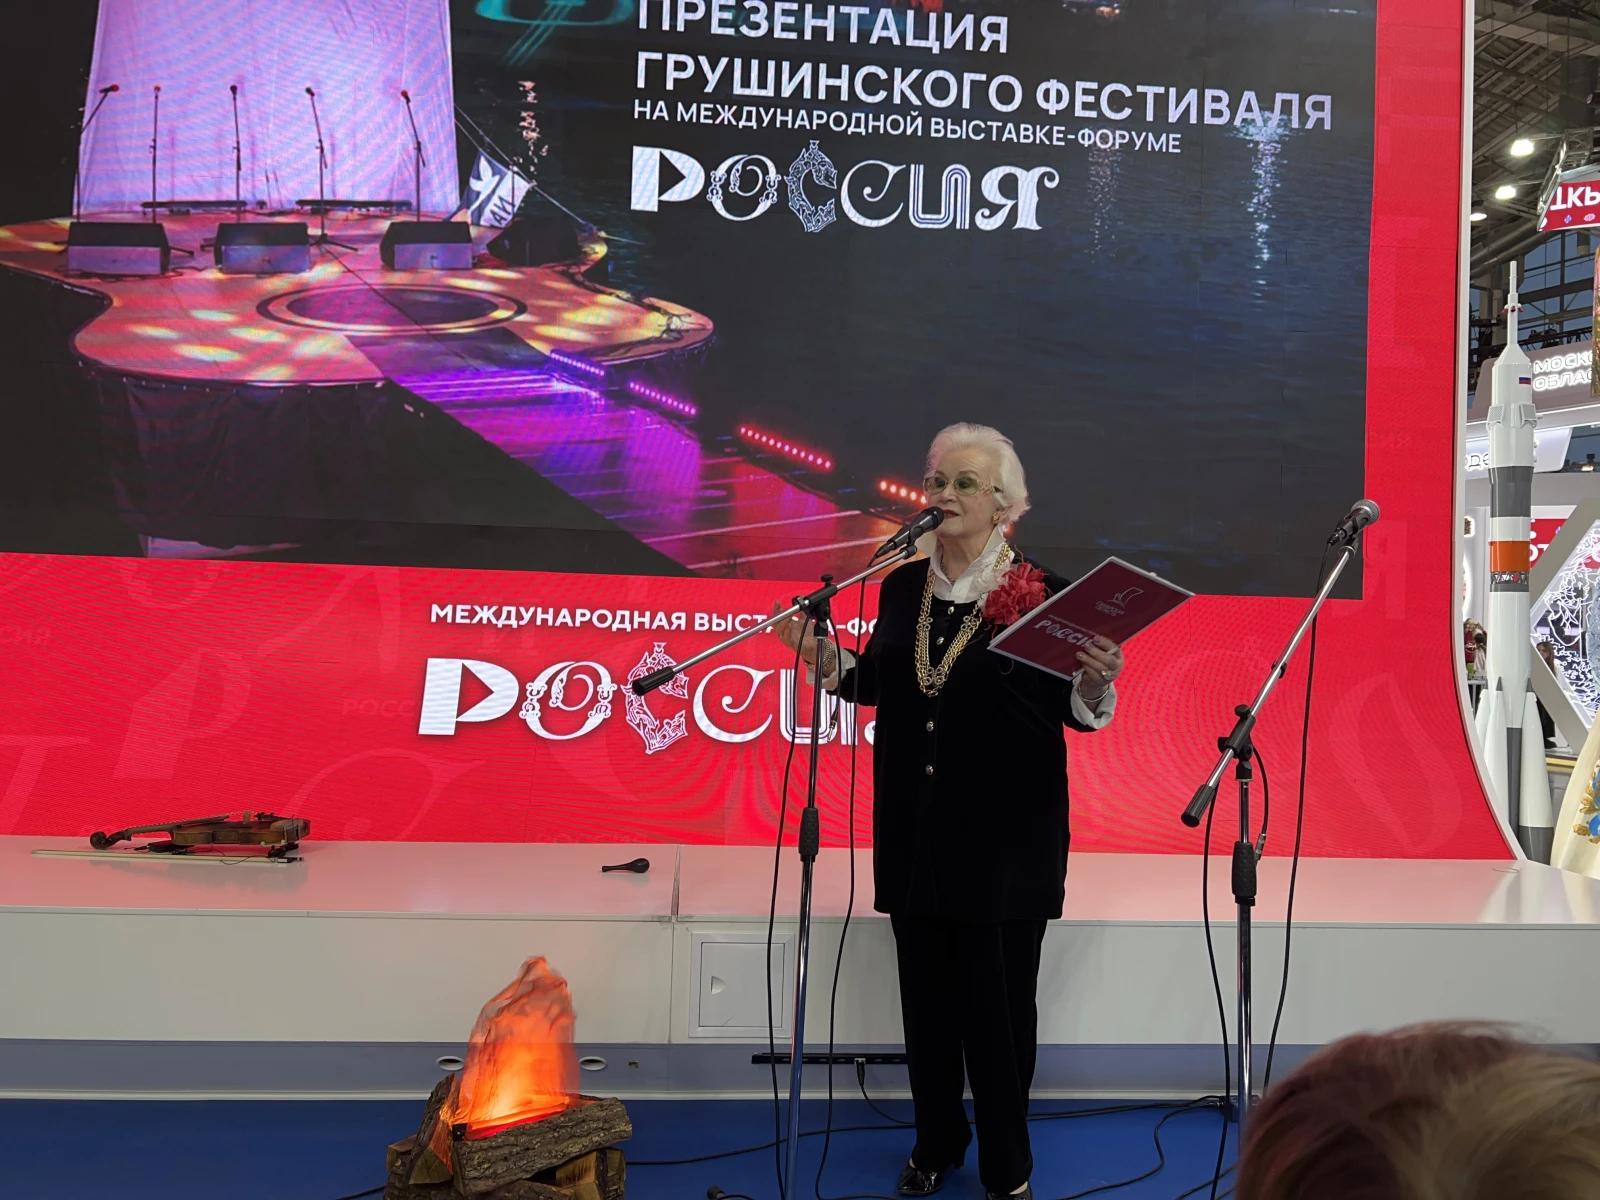 На выставке "Россия" прошла презентация Грушинского фестиваля